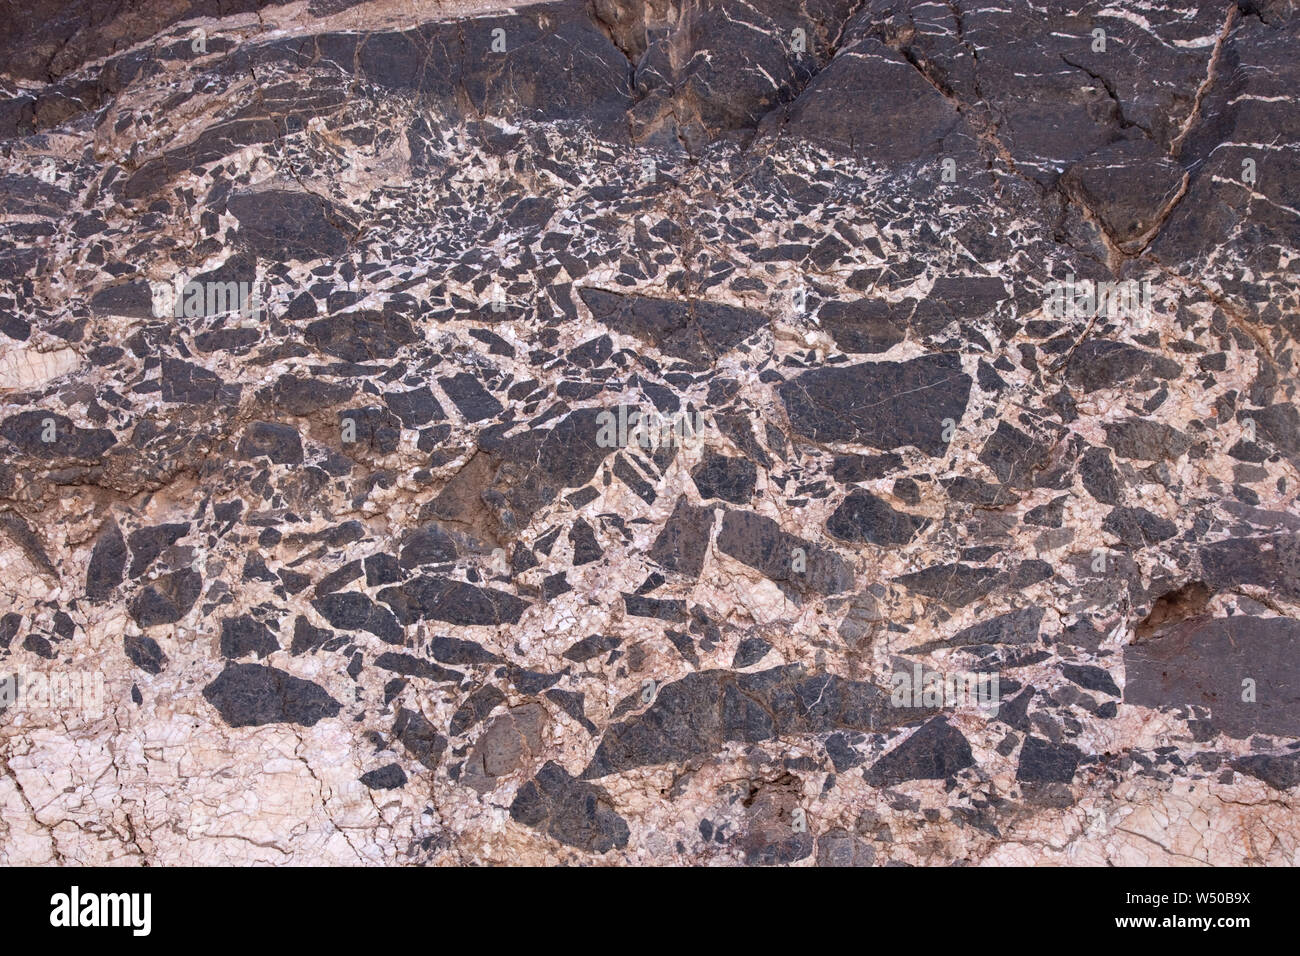 Breccia sedimentaria, fatta di frammenti di pietra calcarea e una matrice di calcite, esposta in una parete del canyon nella Death Valley, CA. La foto è di circa 4 metri acros Foto Stock